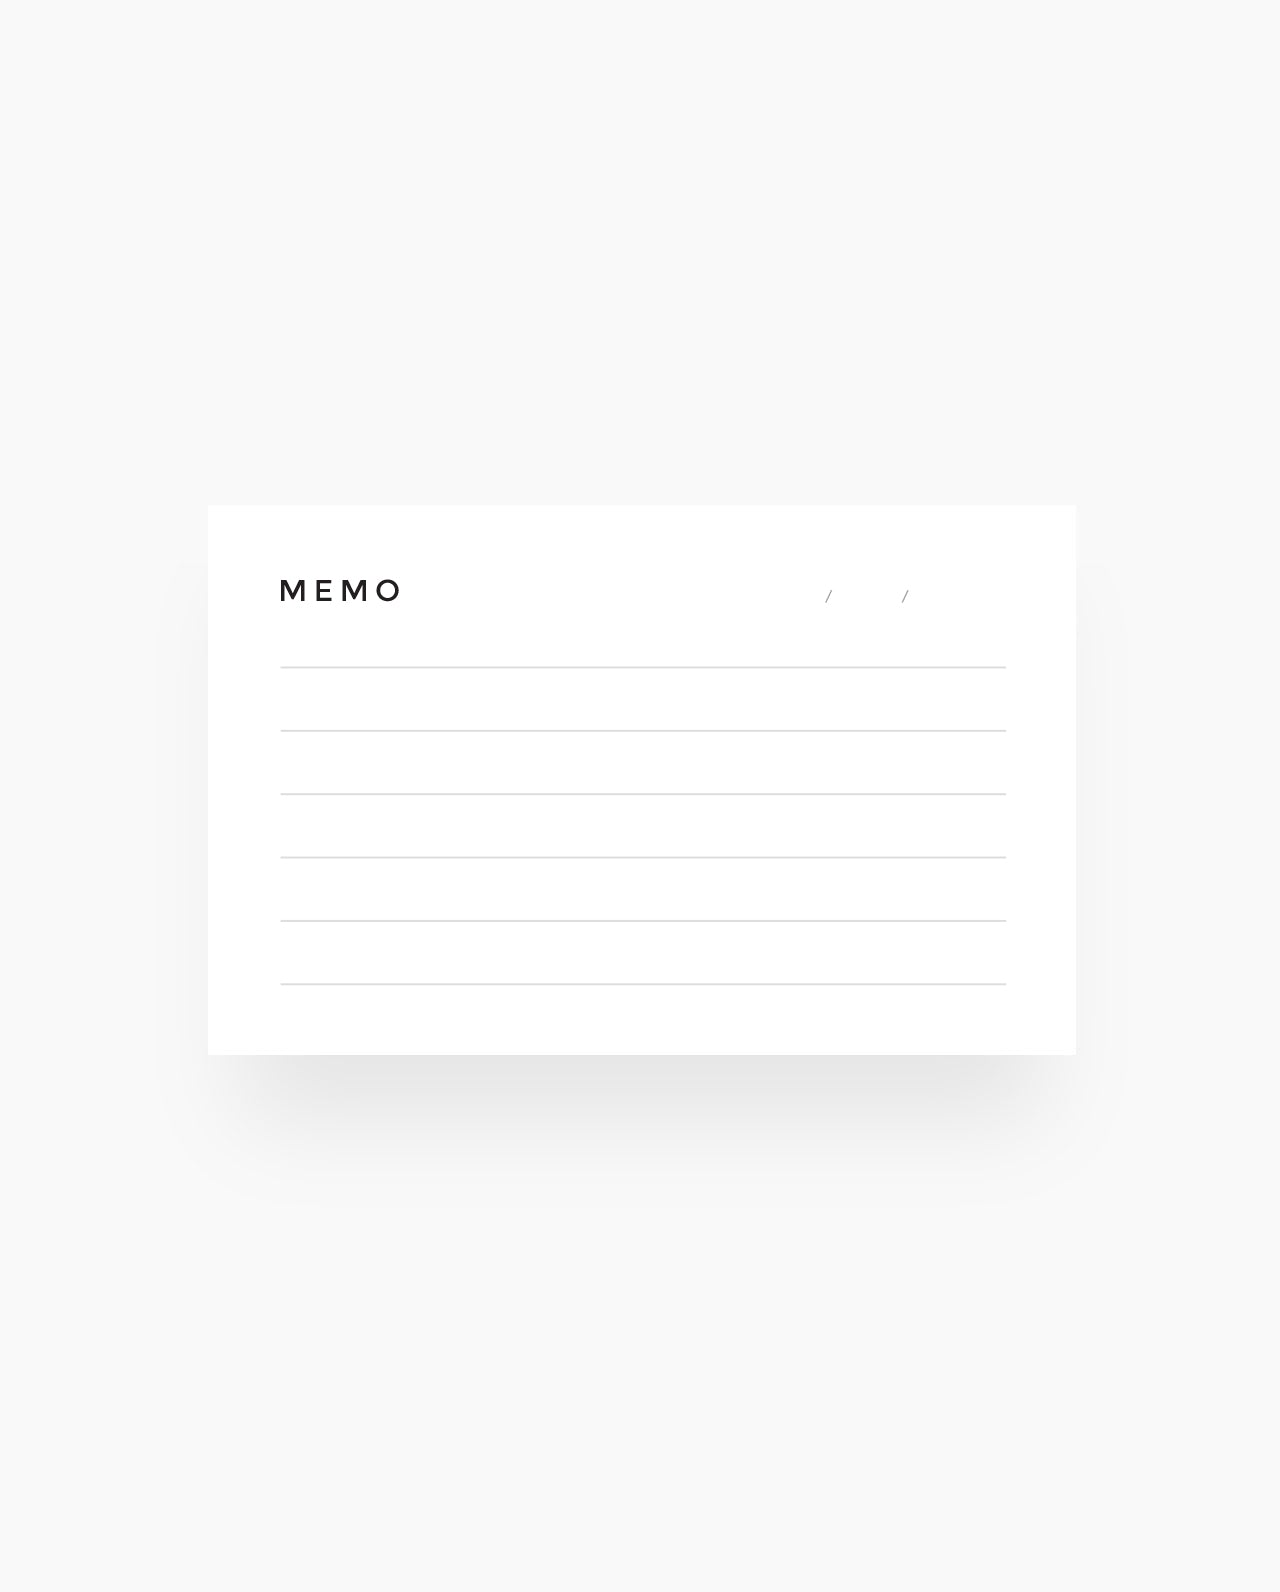 WC003 - Memo - Wallet Cards